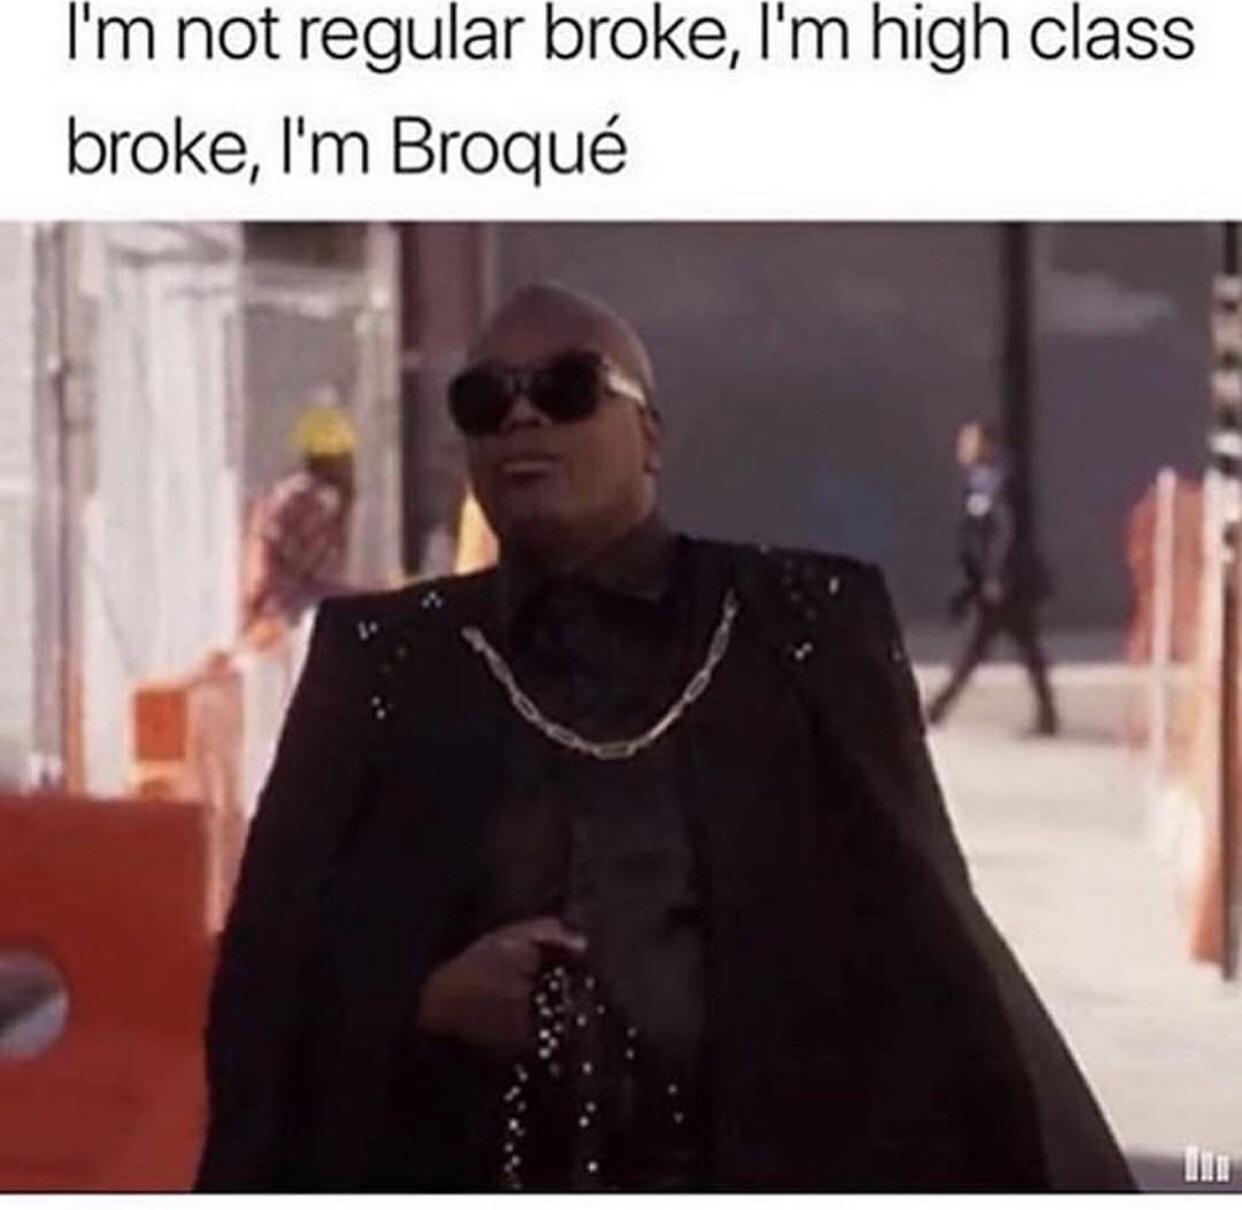 Broque not Broke